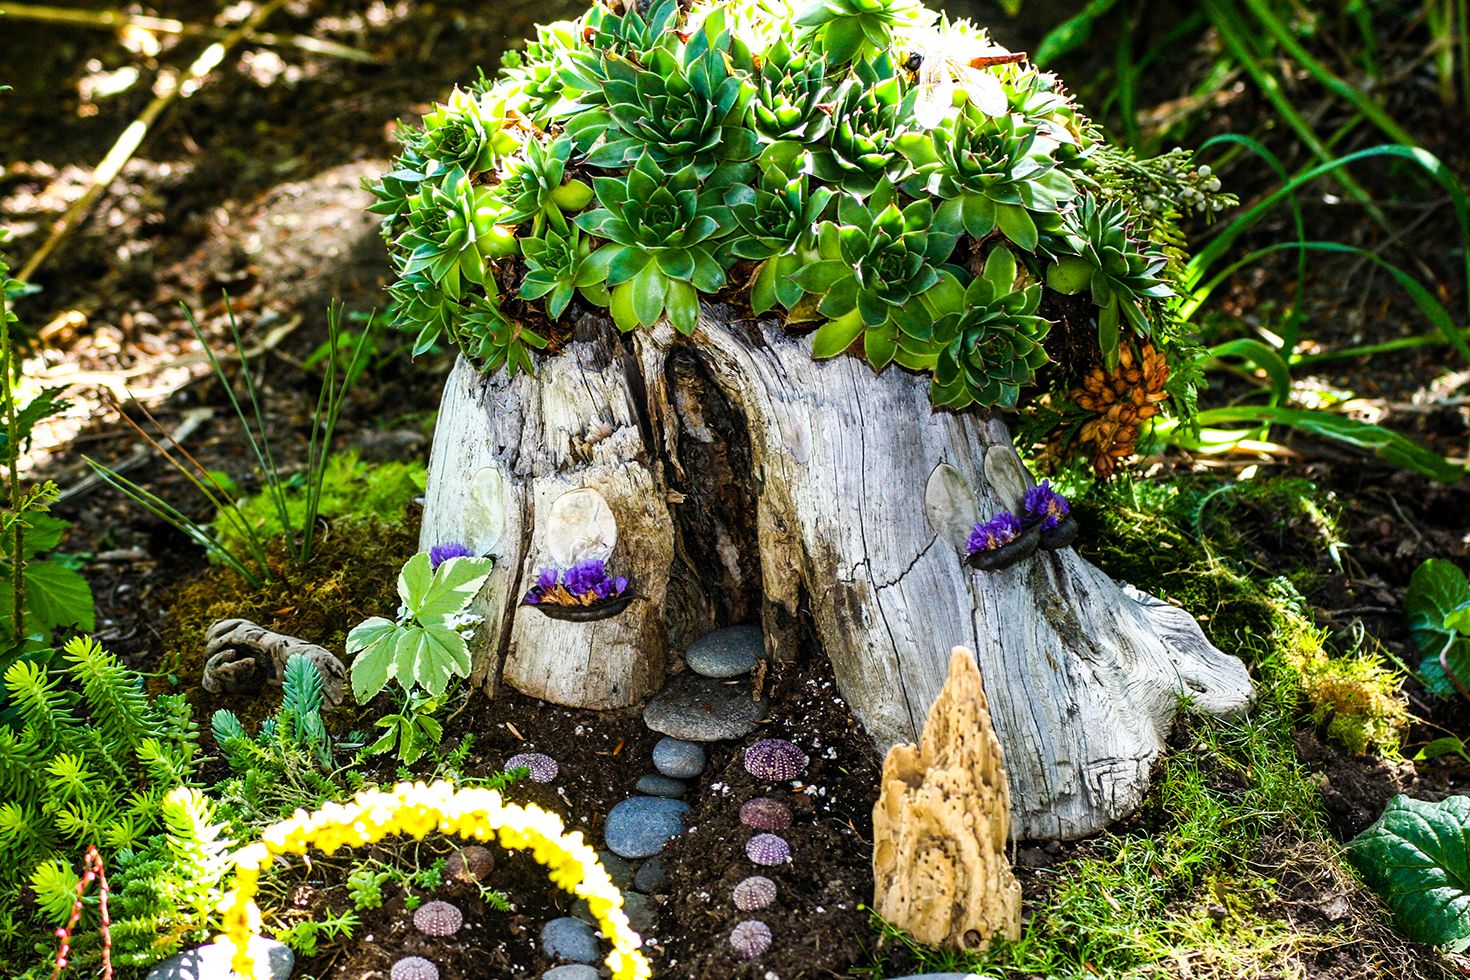 25 DIY Fairy Garden Ideas - How to Make a Miniature Fairy Garden